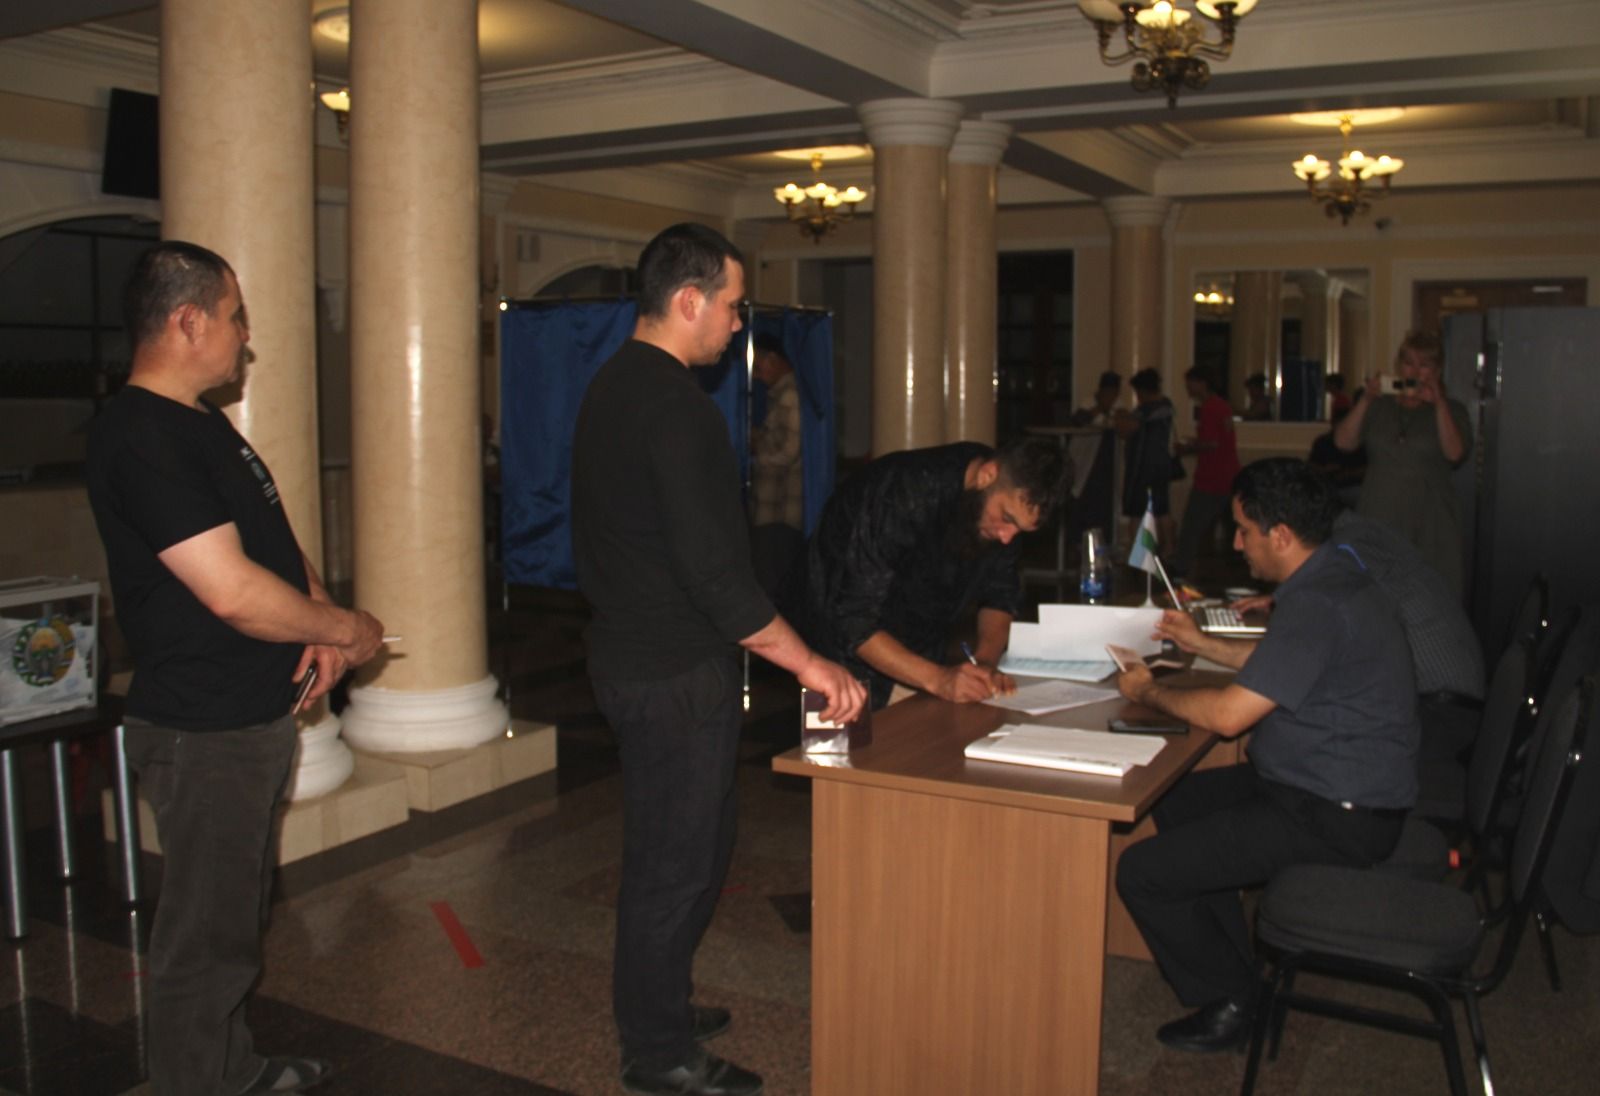 Районда яшәүче Үзбәкстан гражданнары алдан тавыш бирүдә катнаштылар